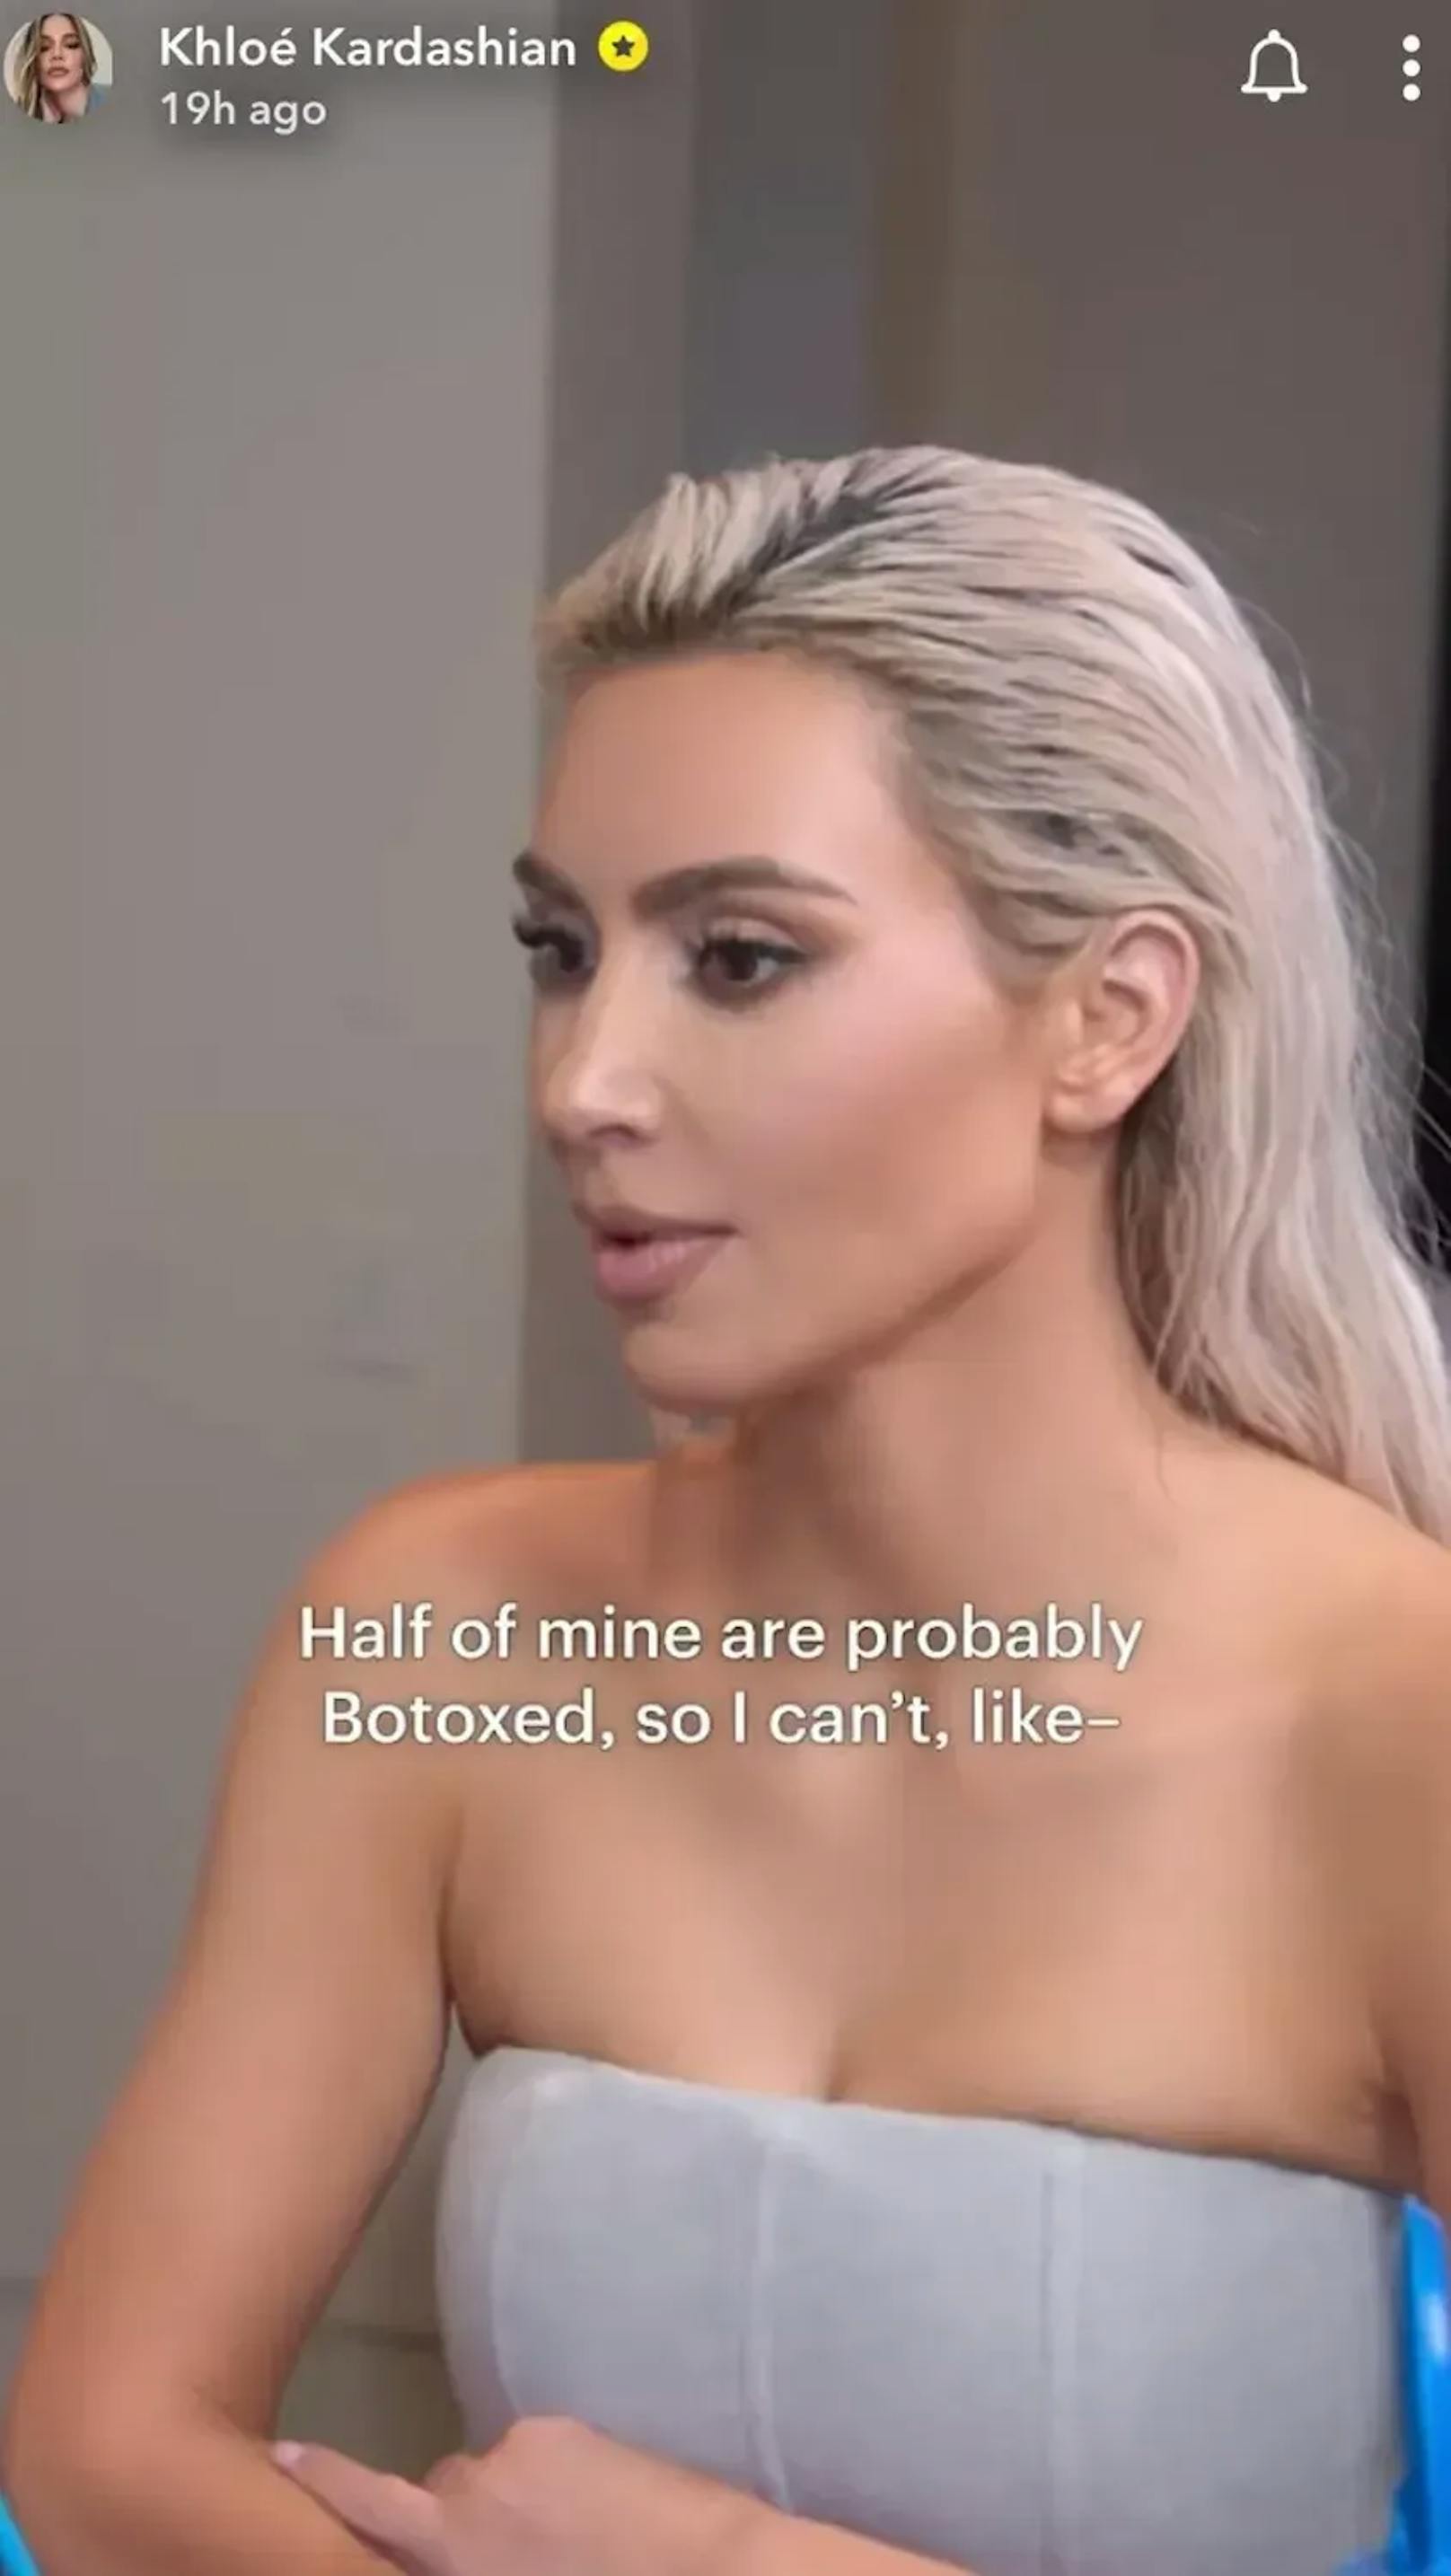 In der Vorschau zur neuen Staffel von "The Kardashians" sagt Kim zu ihrem Gesangscoach, dass ihre Halsmuskeln gebotoxt seien.